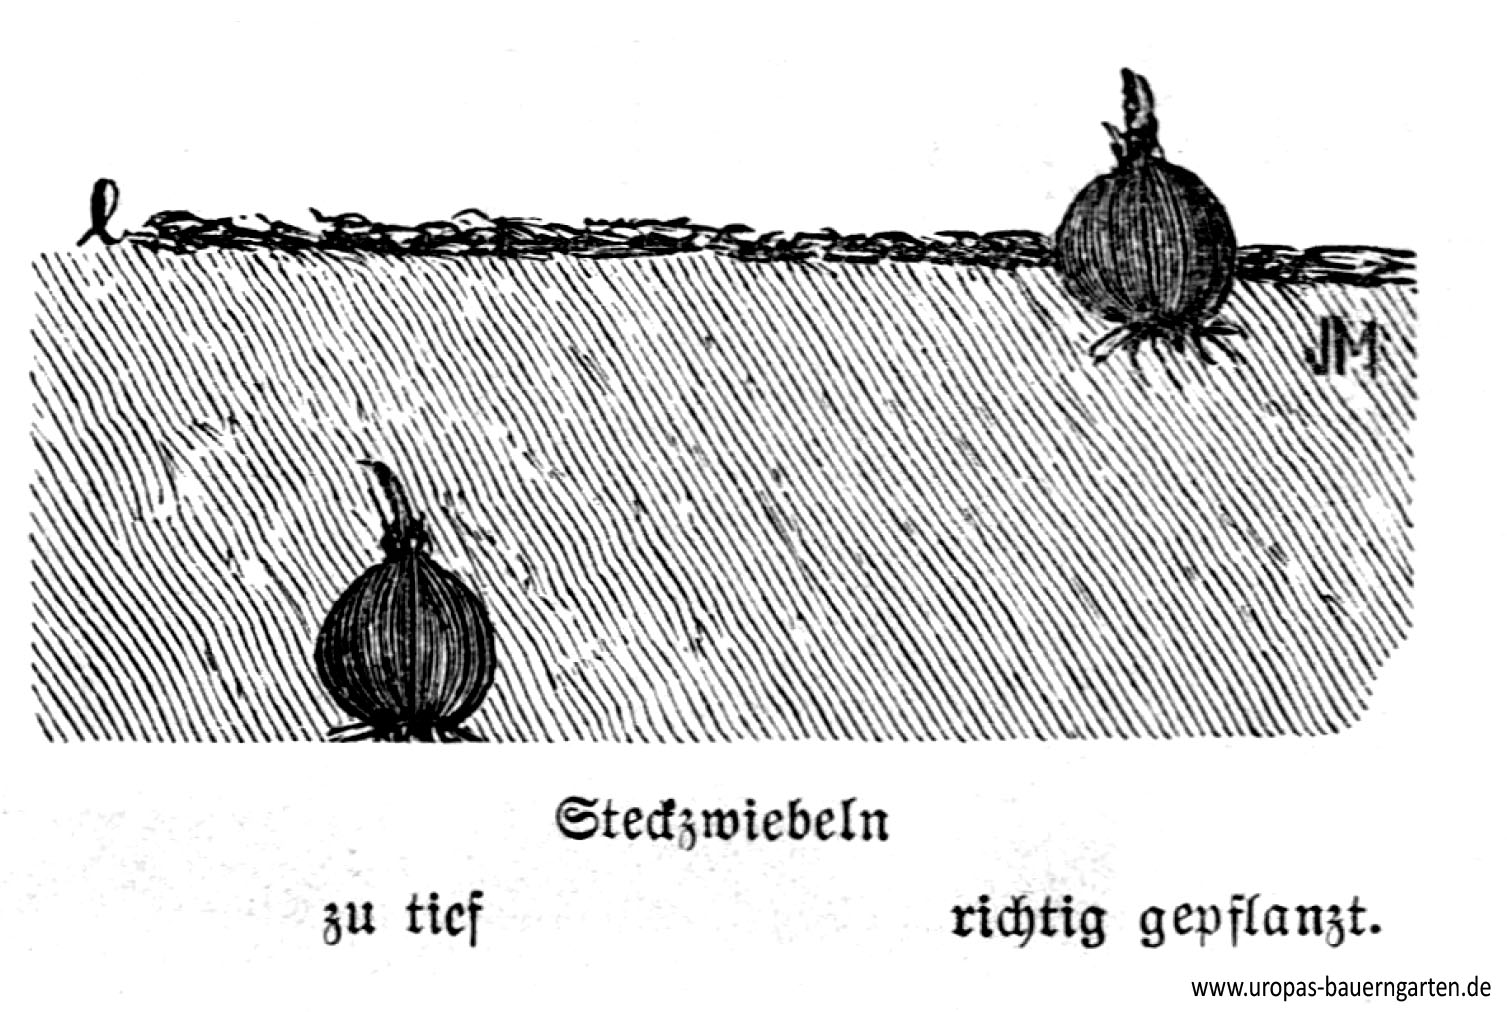 Die Abbildung zeigt eine Steckzwiebel die links zu tief gepflanzt und rechts richtig gepflanzt wurde und stammt aus einem alten Gartenbuch.